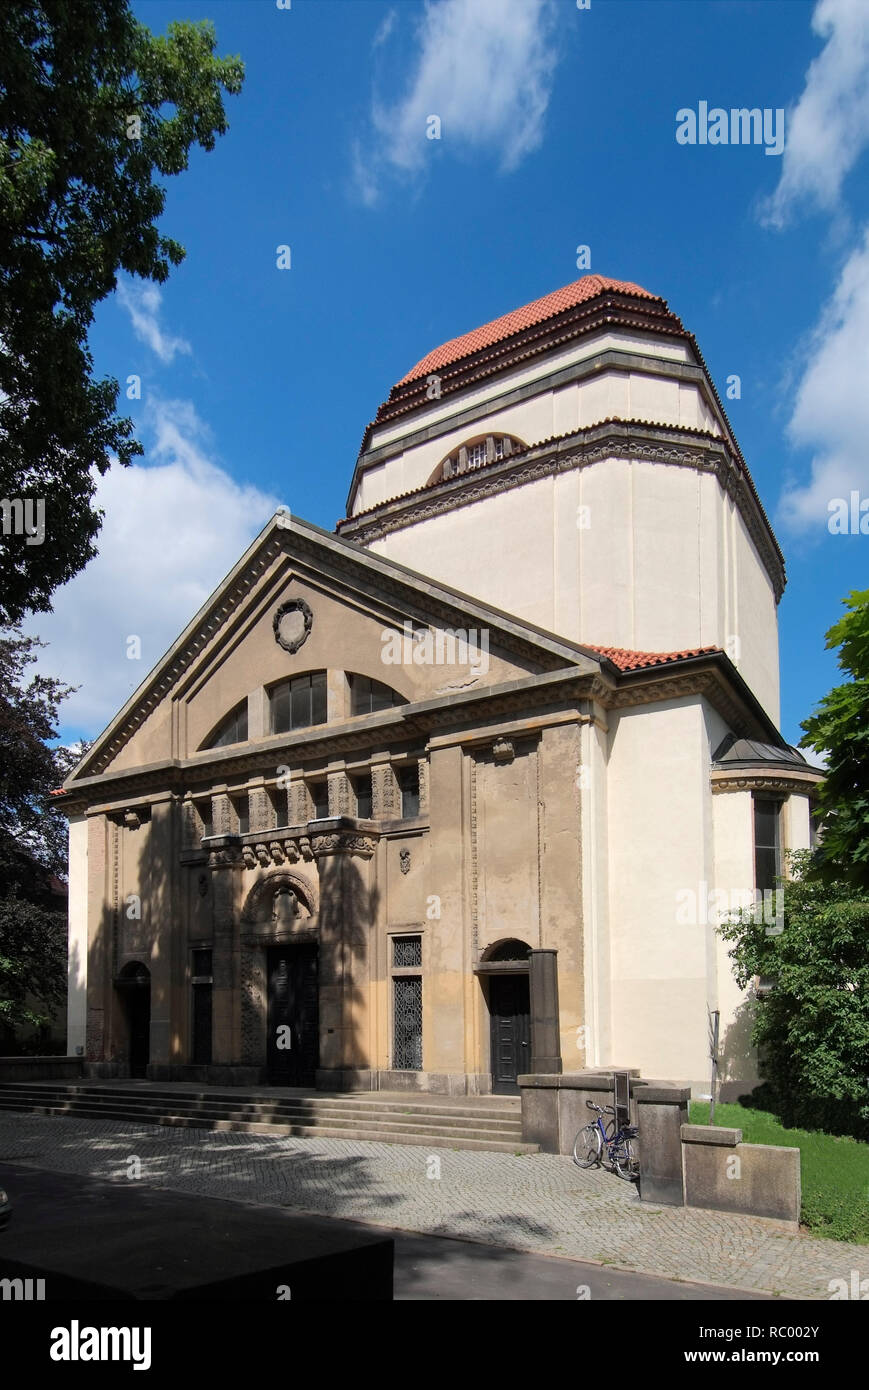 Neue Synagoge, Otto-Müller-Straße, Görlitz, Sachsen, Deutschland, Europa | Neue Synagogue, Otto-Müller-Straße, Goerlitz, Saxony, Germany, Europe Stock Photo